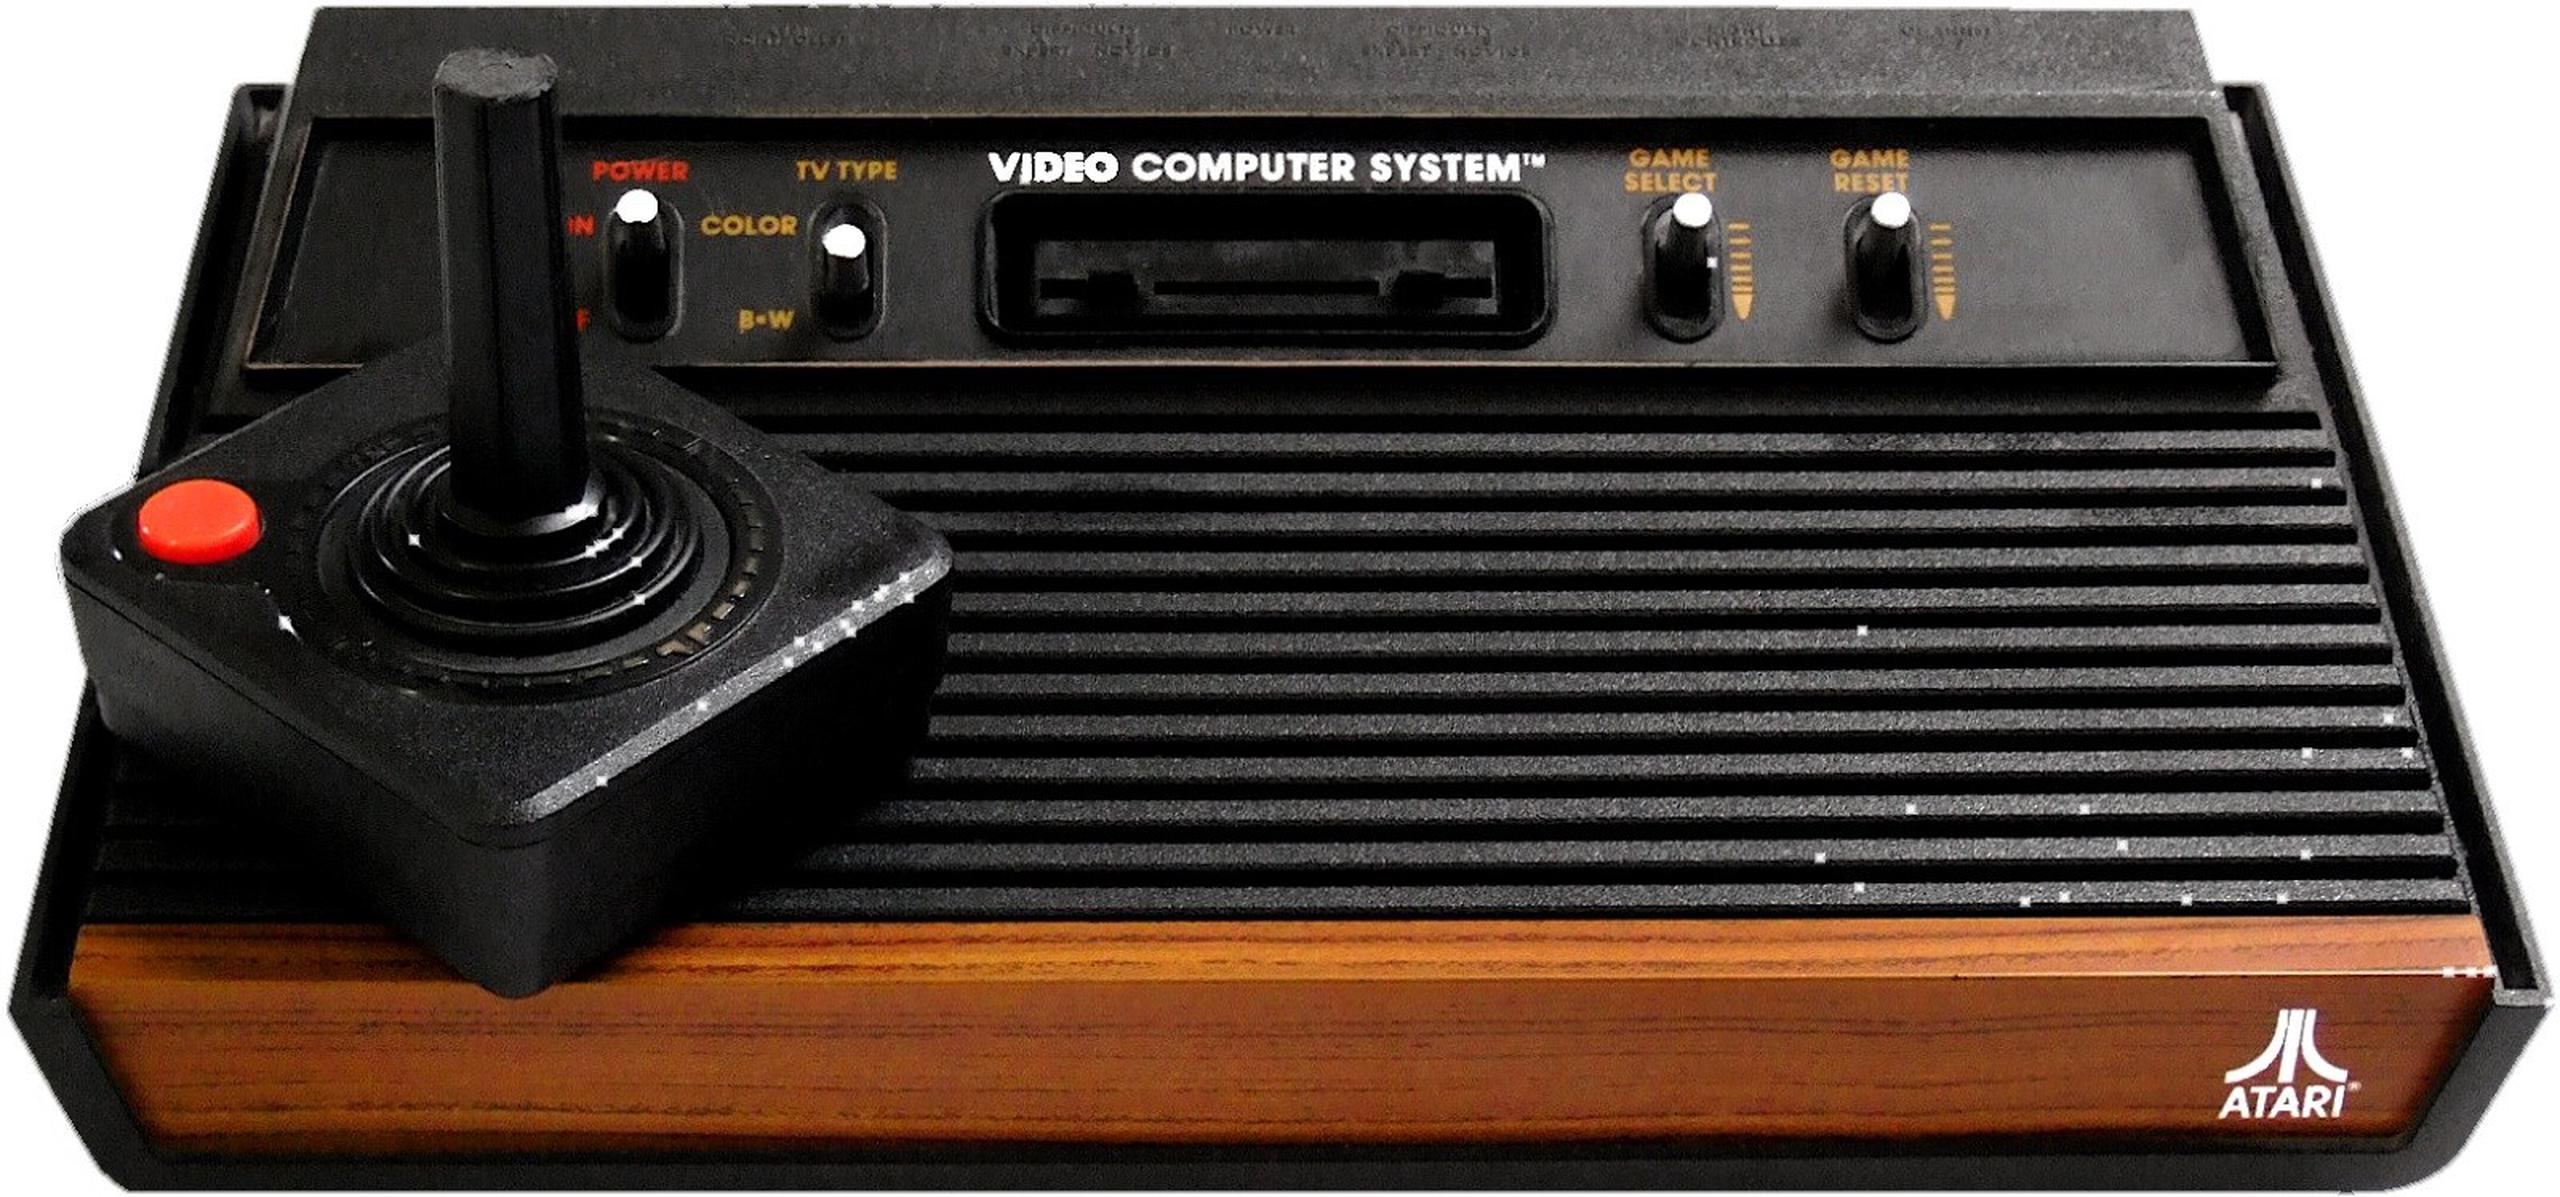 Atari, creado en 1972, fue pionero en juegos de arcade, consolas de videojuegos caseros y computadoras domésticas. (Archivo GFR Media)